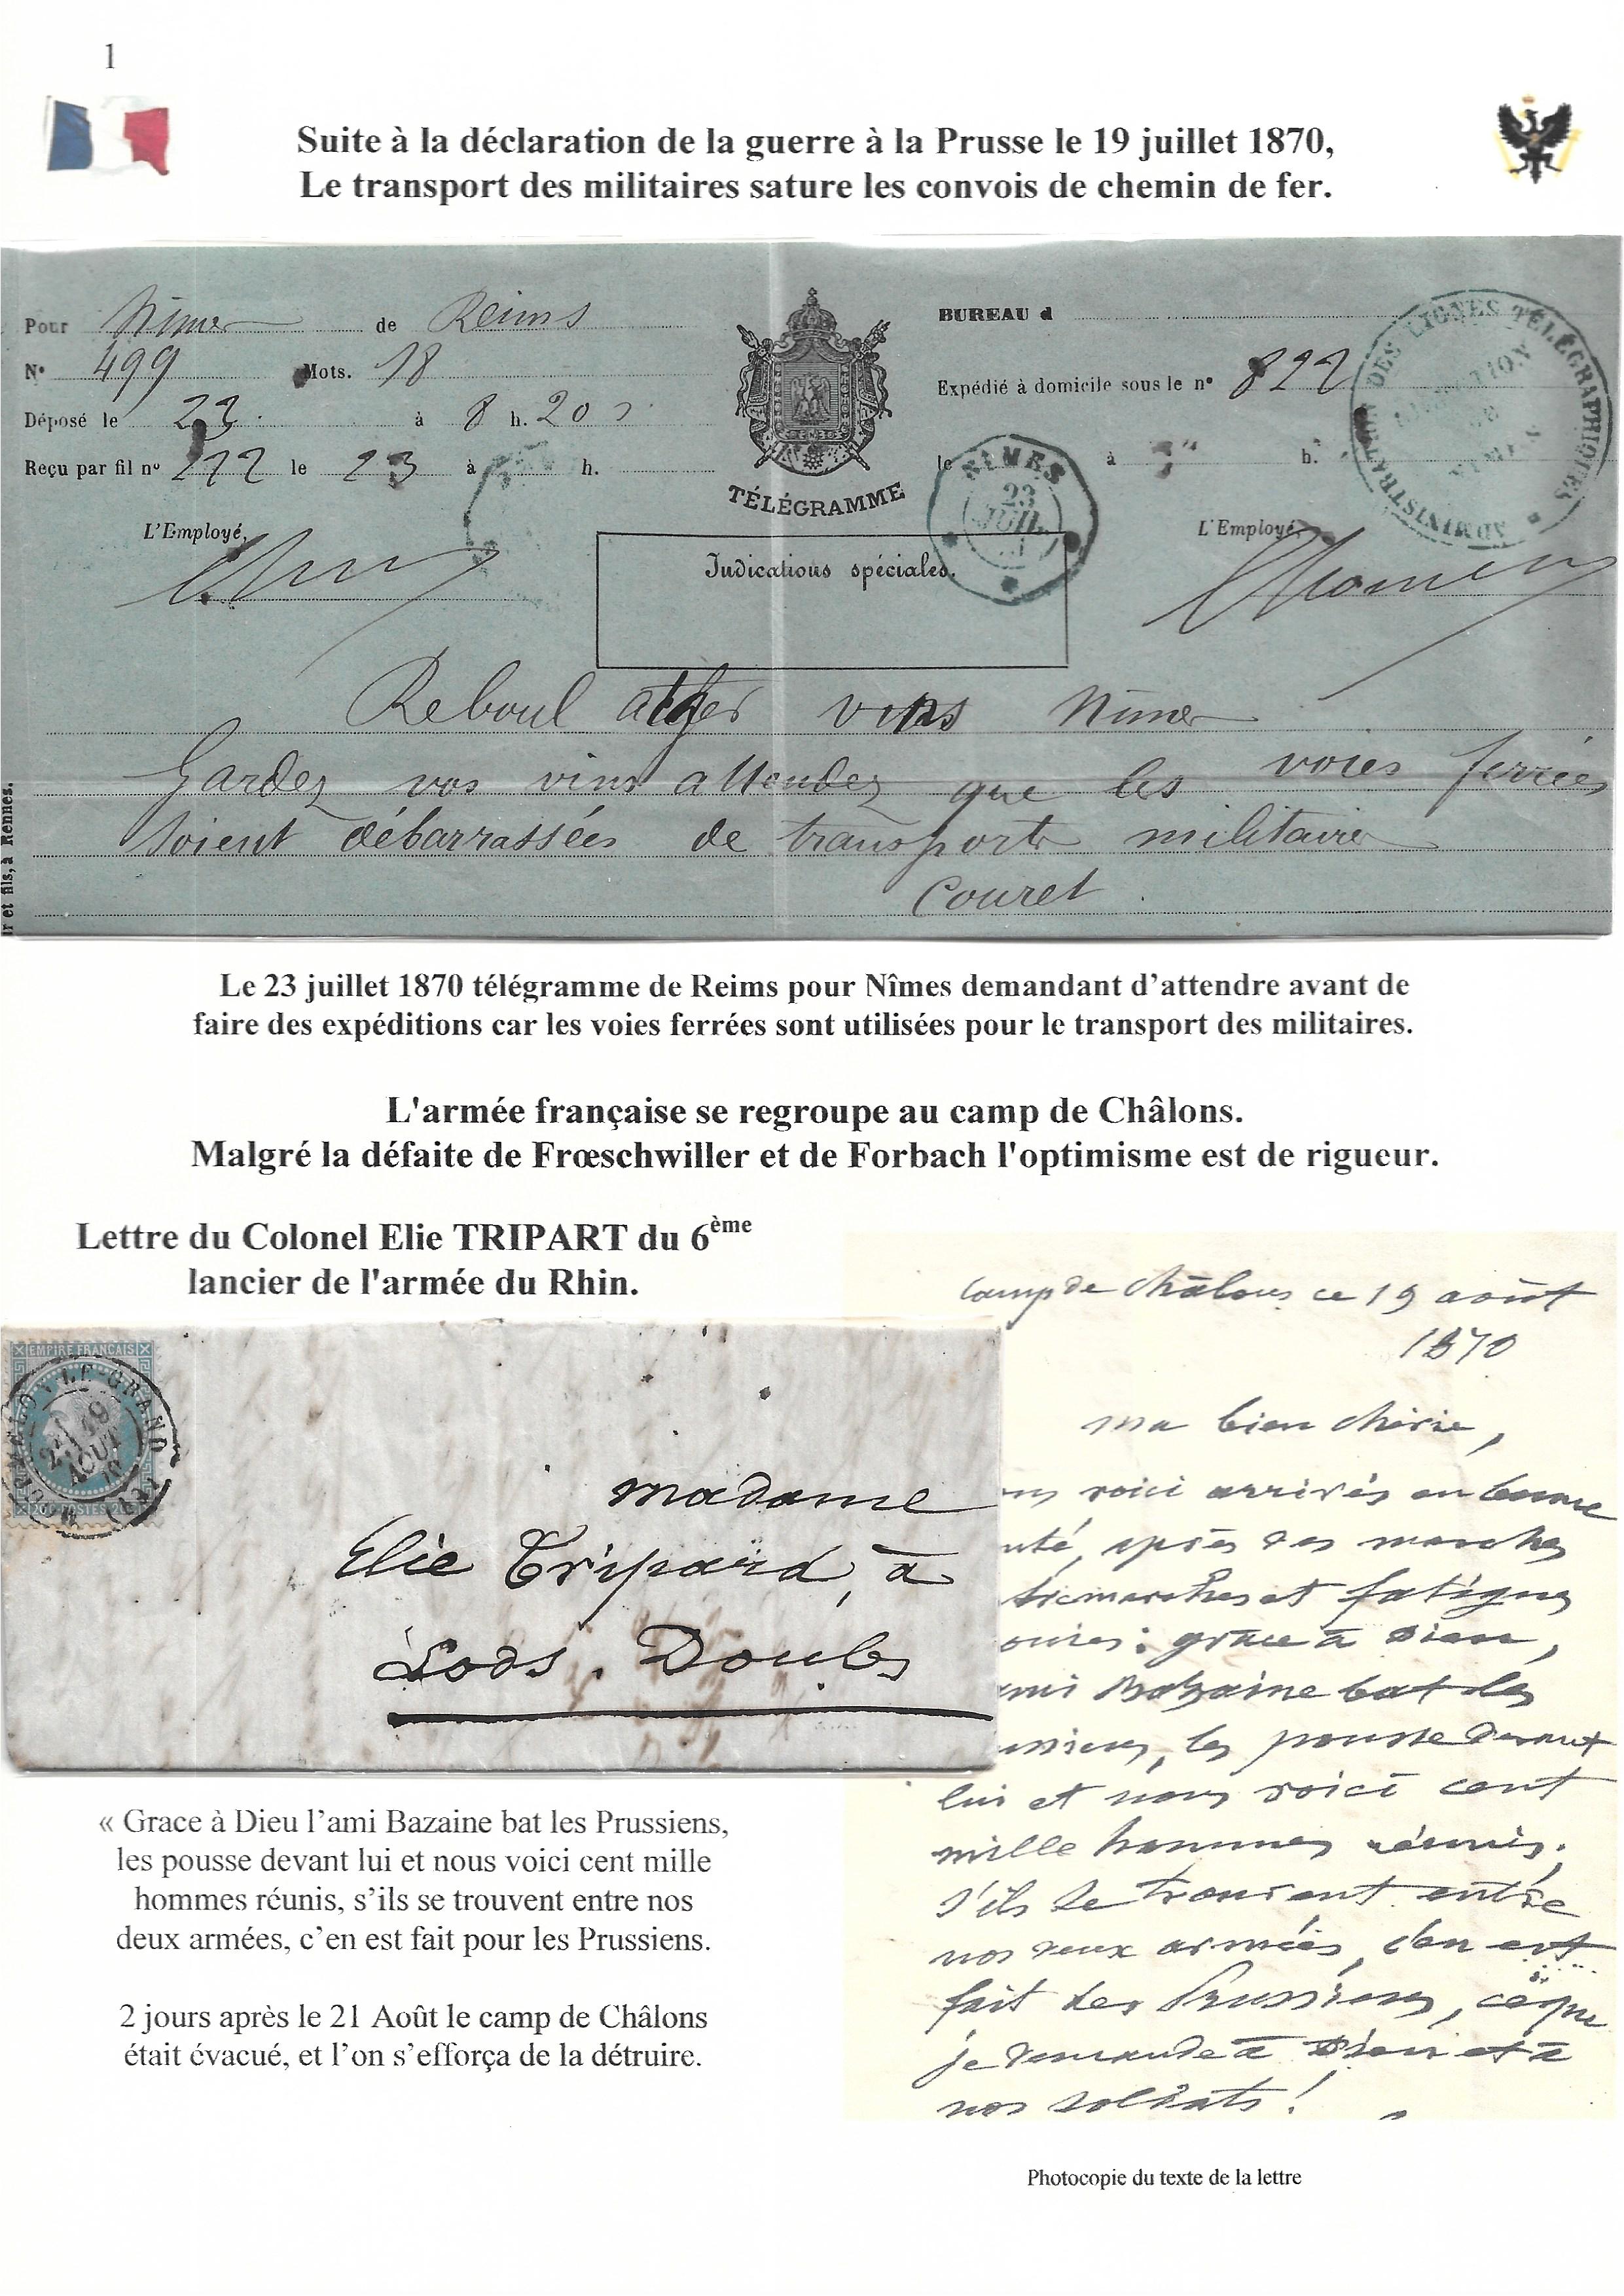 Occupation Prussienne dans la Marne 1870-1872 : Cons��quences sur les relations postales p. 3